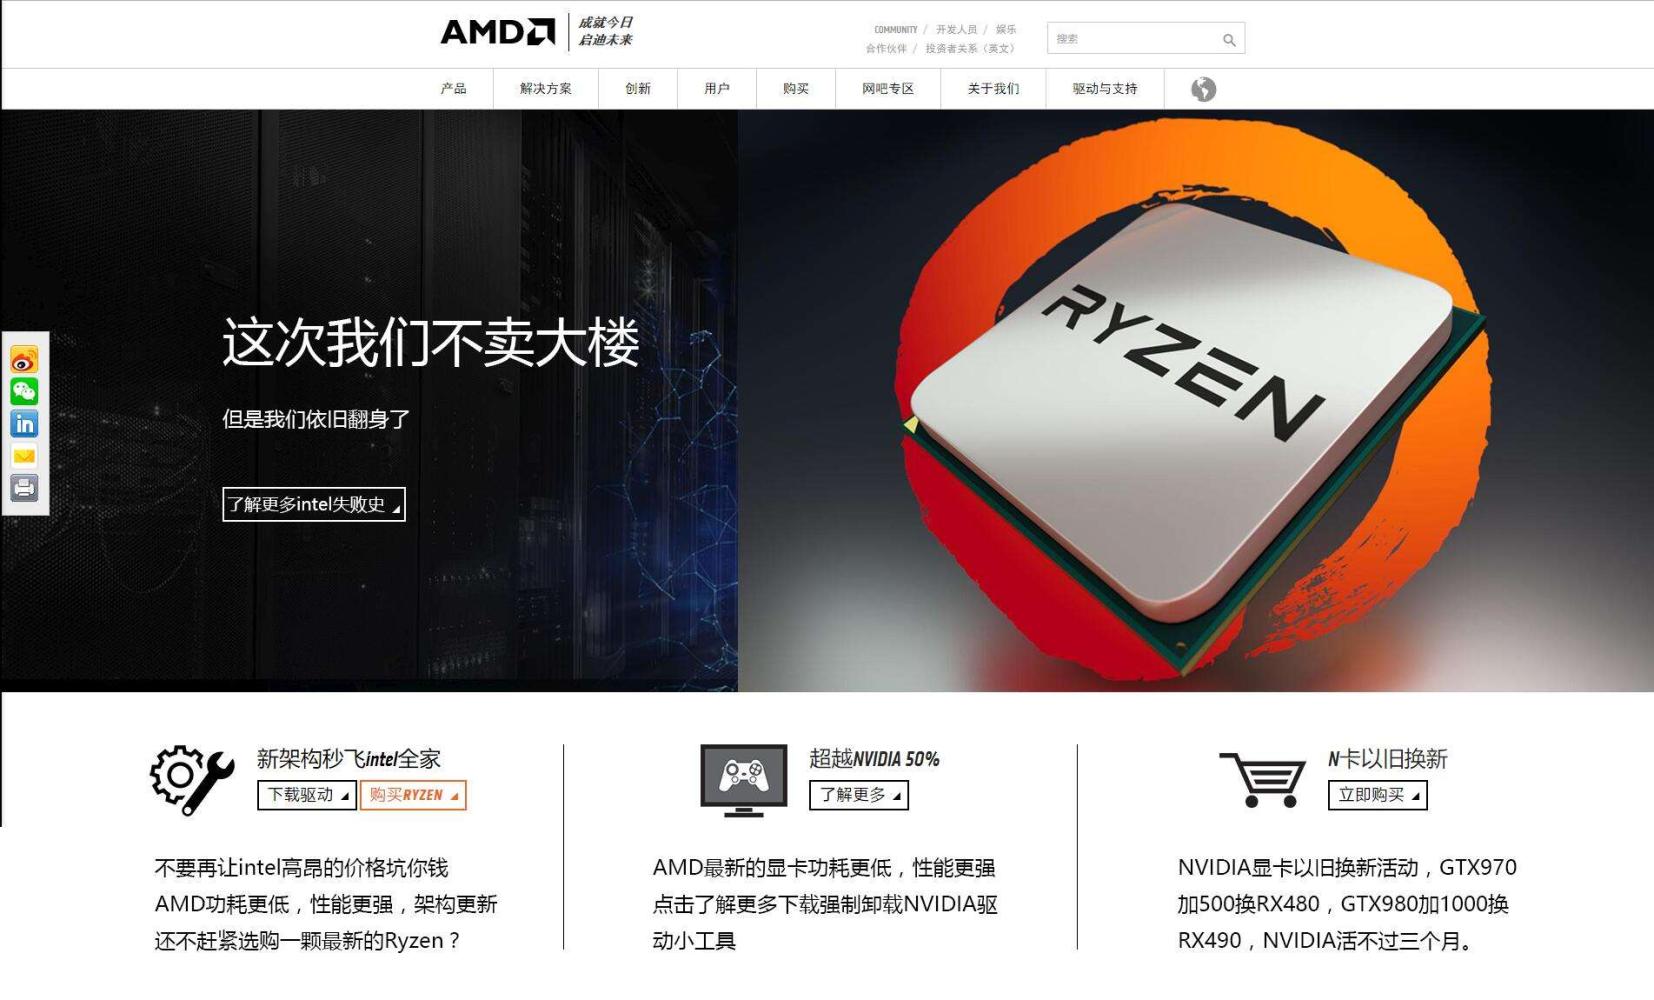 AMD咸鱼翻身里程碑: 顶级CPU跑分重回3DMark名人堂